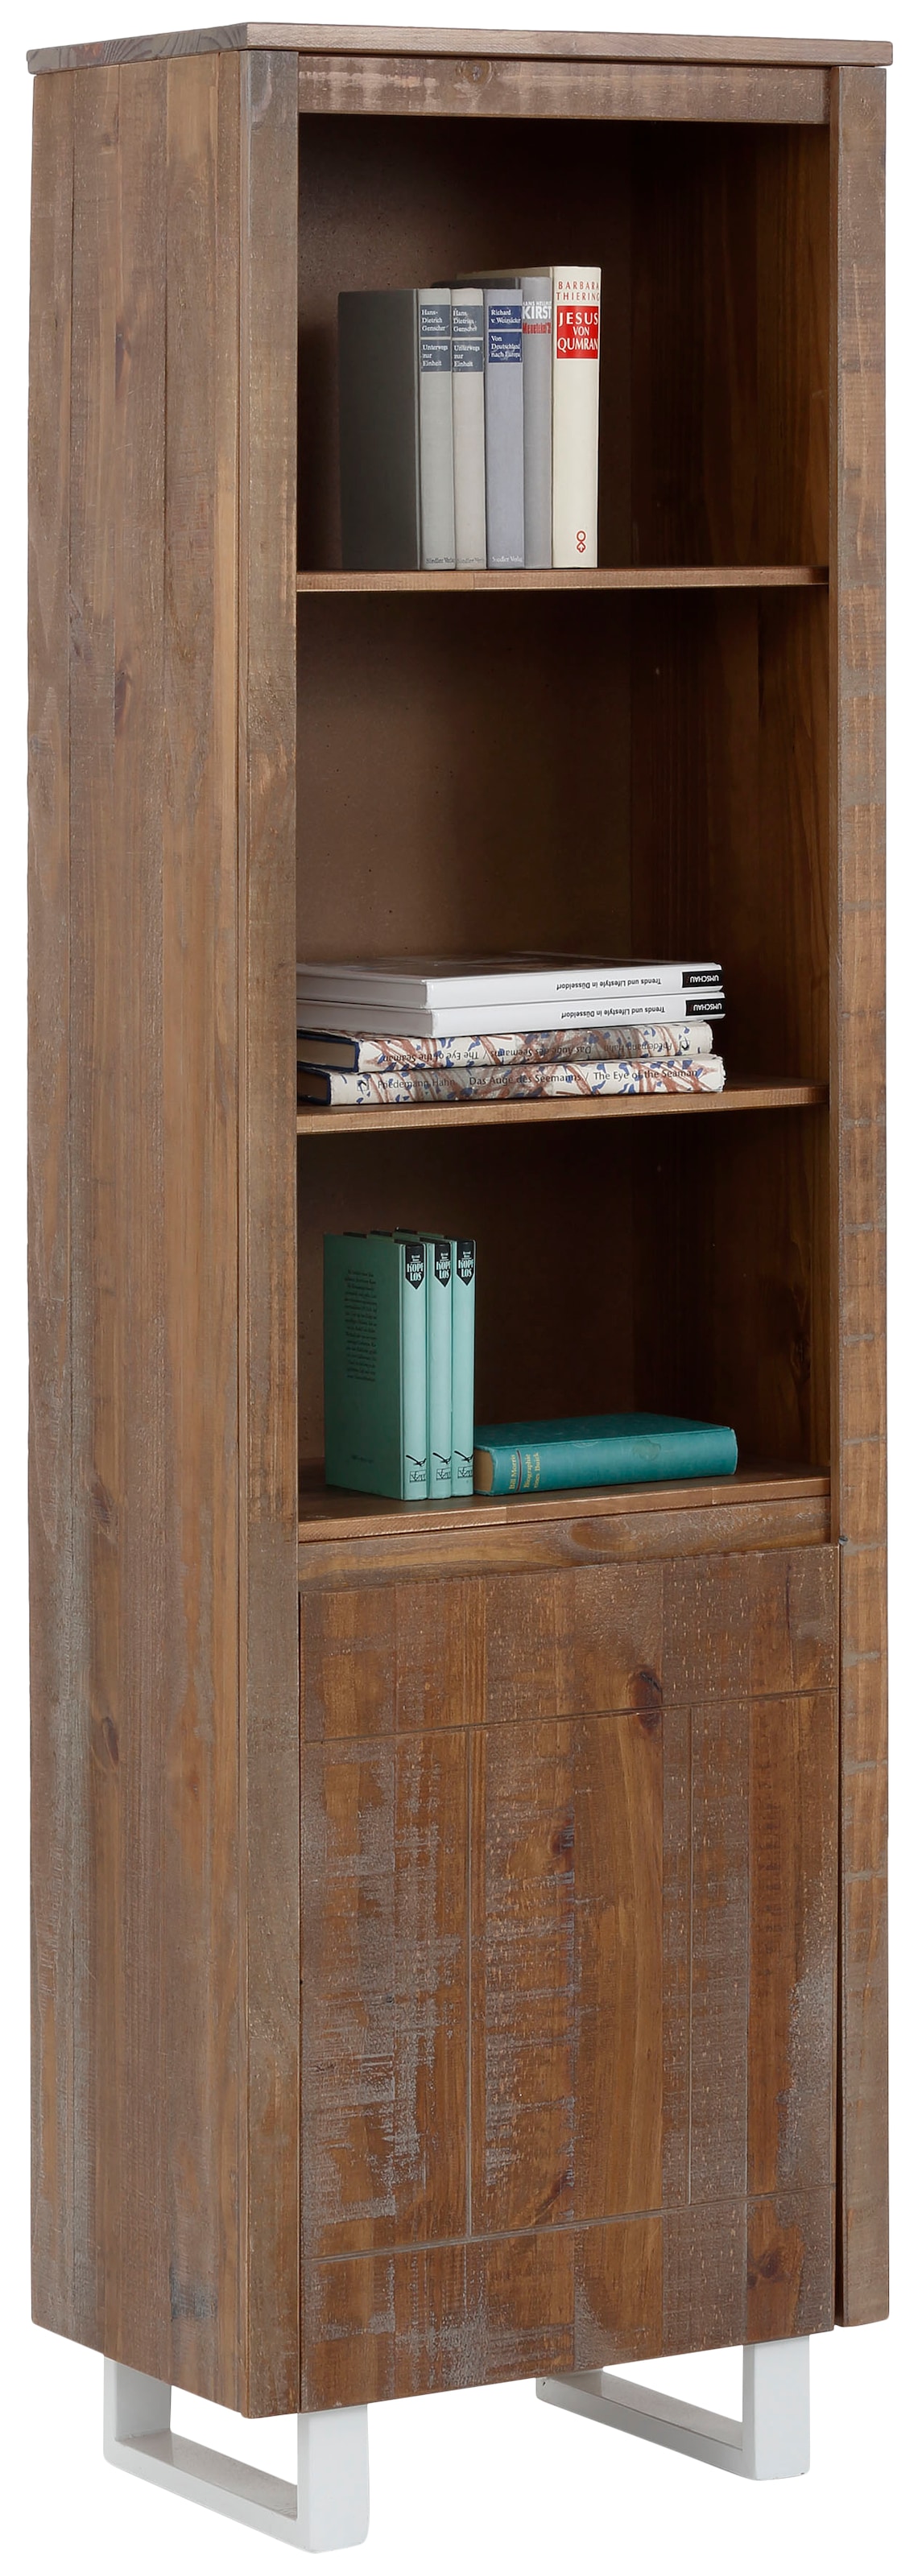 Home affaire Bücherregal »Lagos«, aus schönem massivem Kiefernholz, grifflos, Breite 55 cm